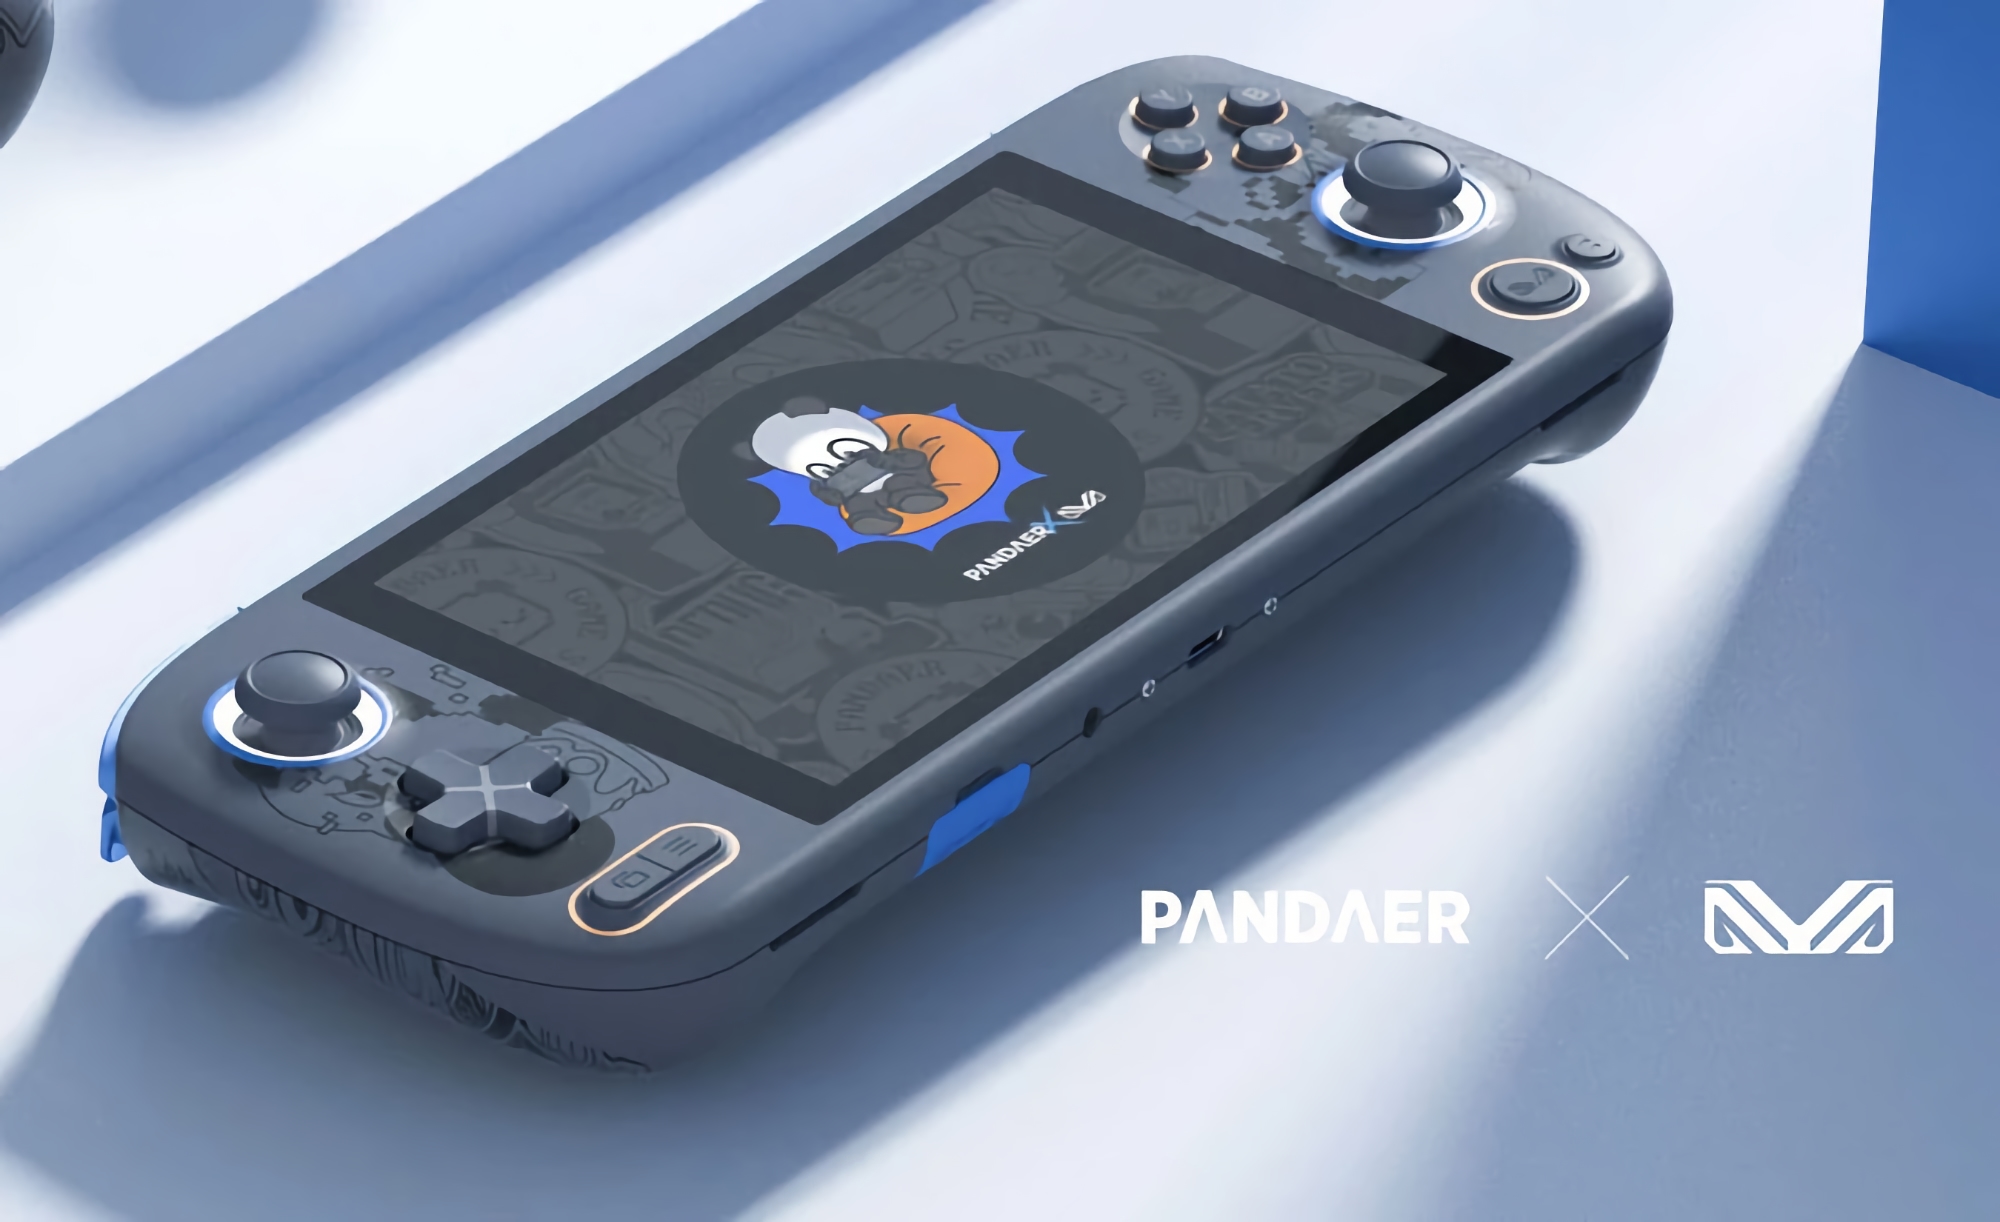 Konkurent Nintendo Switch: Meizu wprowadzi konsolę do gier marki PANDAER 9 czerwca